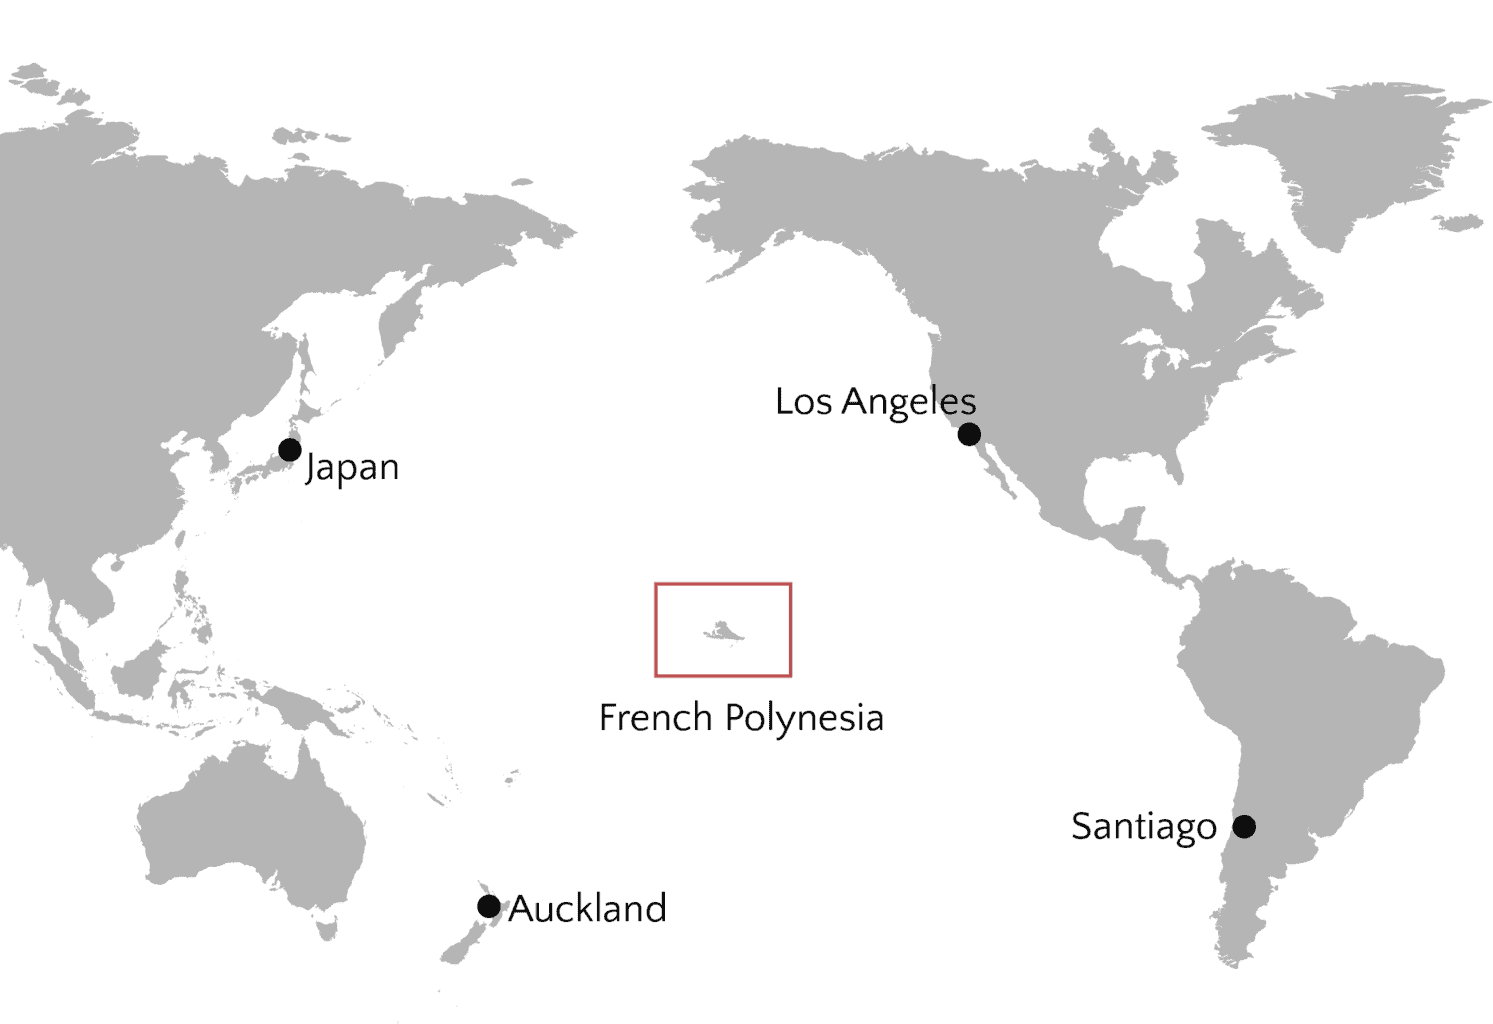 ¿Qué ciudad es parte de la Polinesia Francesa?